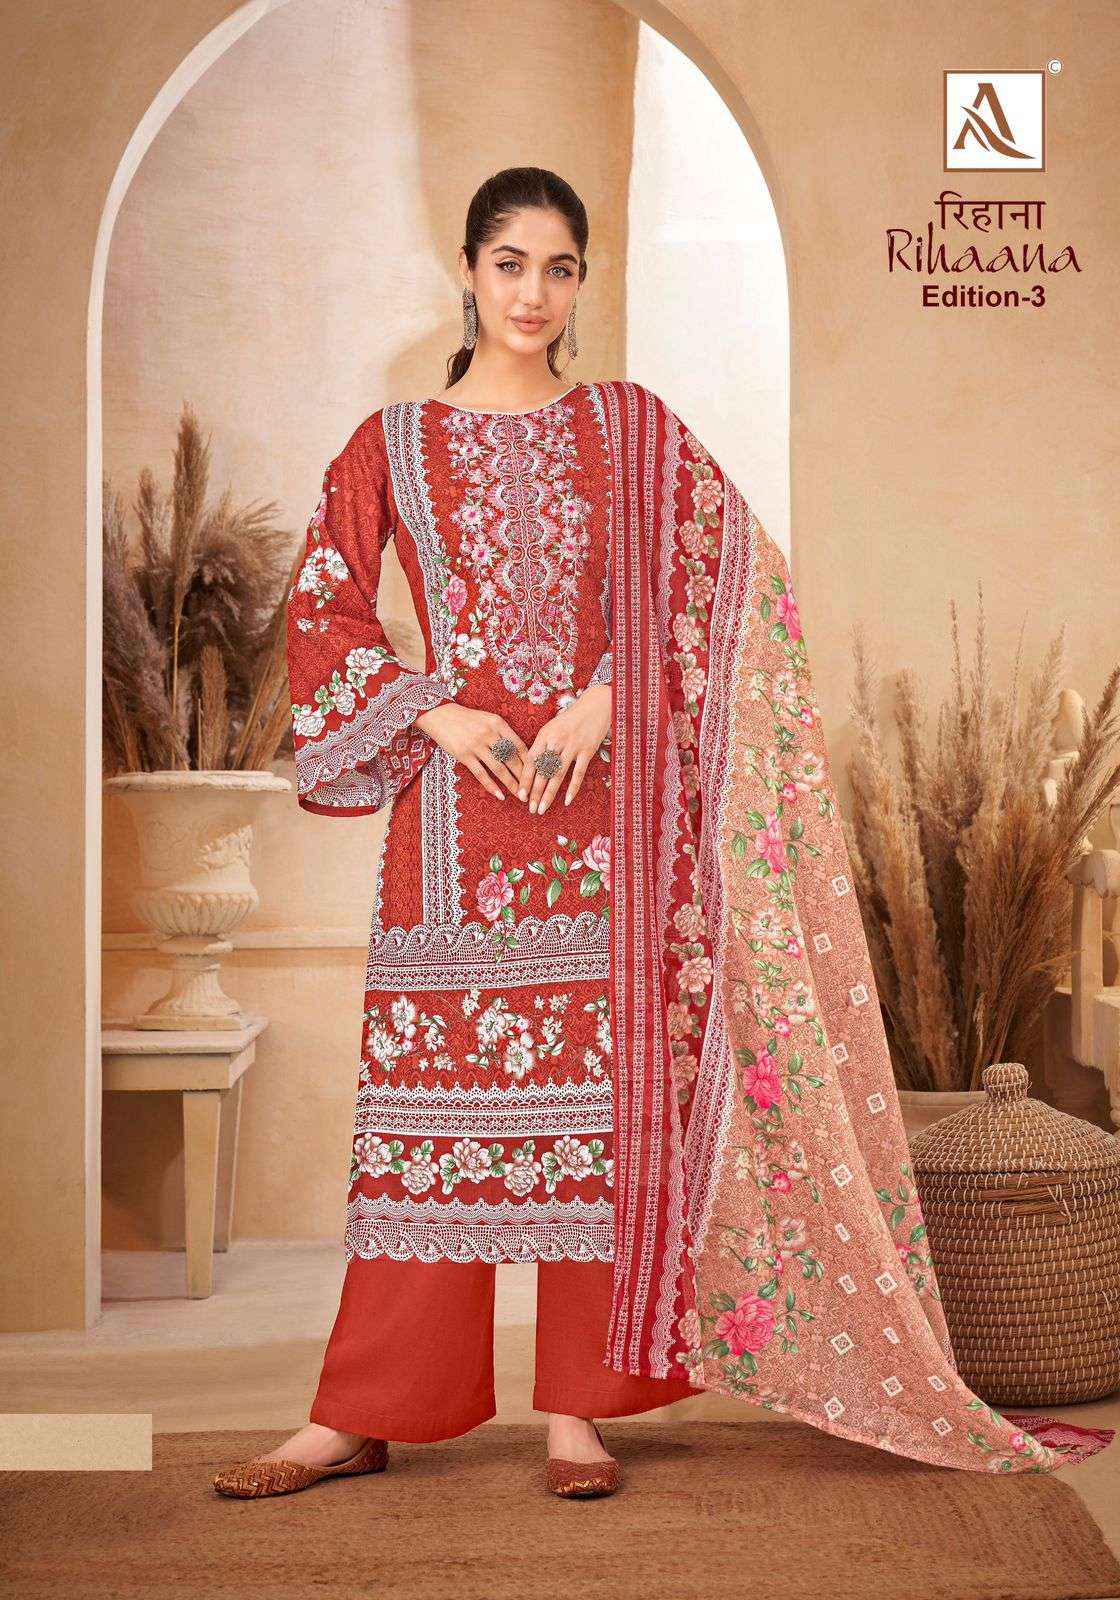 Alok Suit Rihaana Edition 3 Pure Cambric Cotton Salwar Kameez Catalog Supplier (8 pcs catalog )